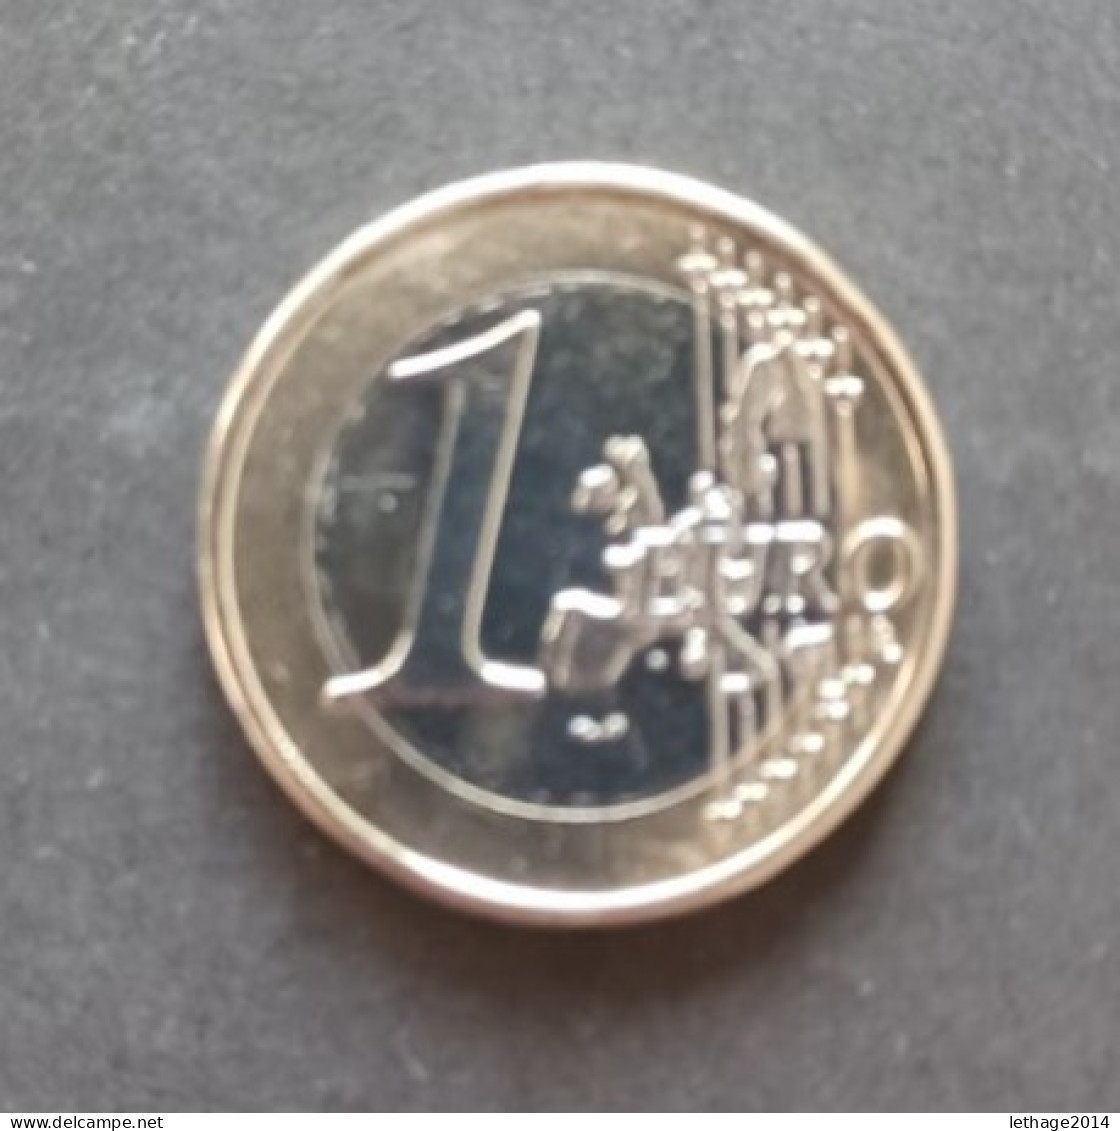 COIN EURO GRECIA 1 EURO 2002 CIVETTA ISSUE 81440055 I ISSUED - Grecia